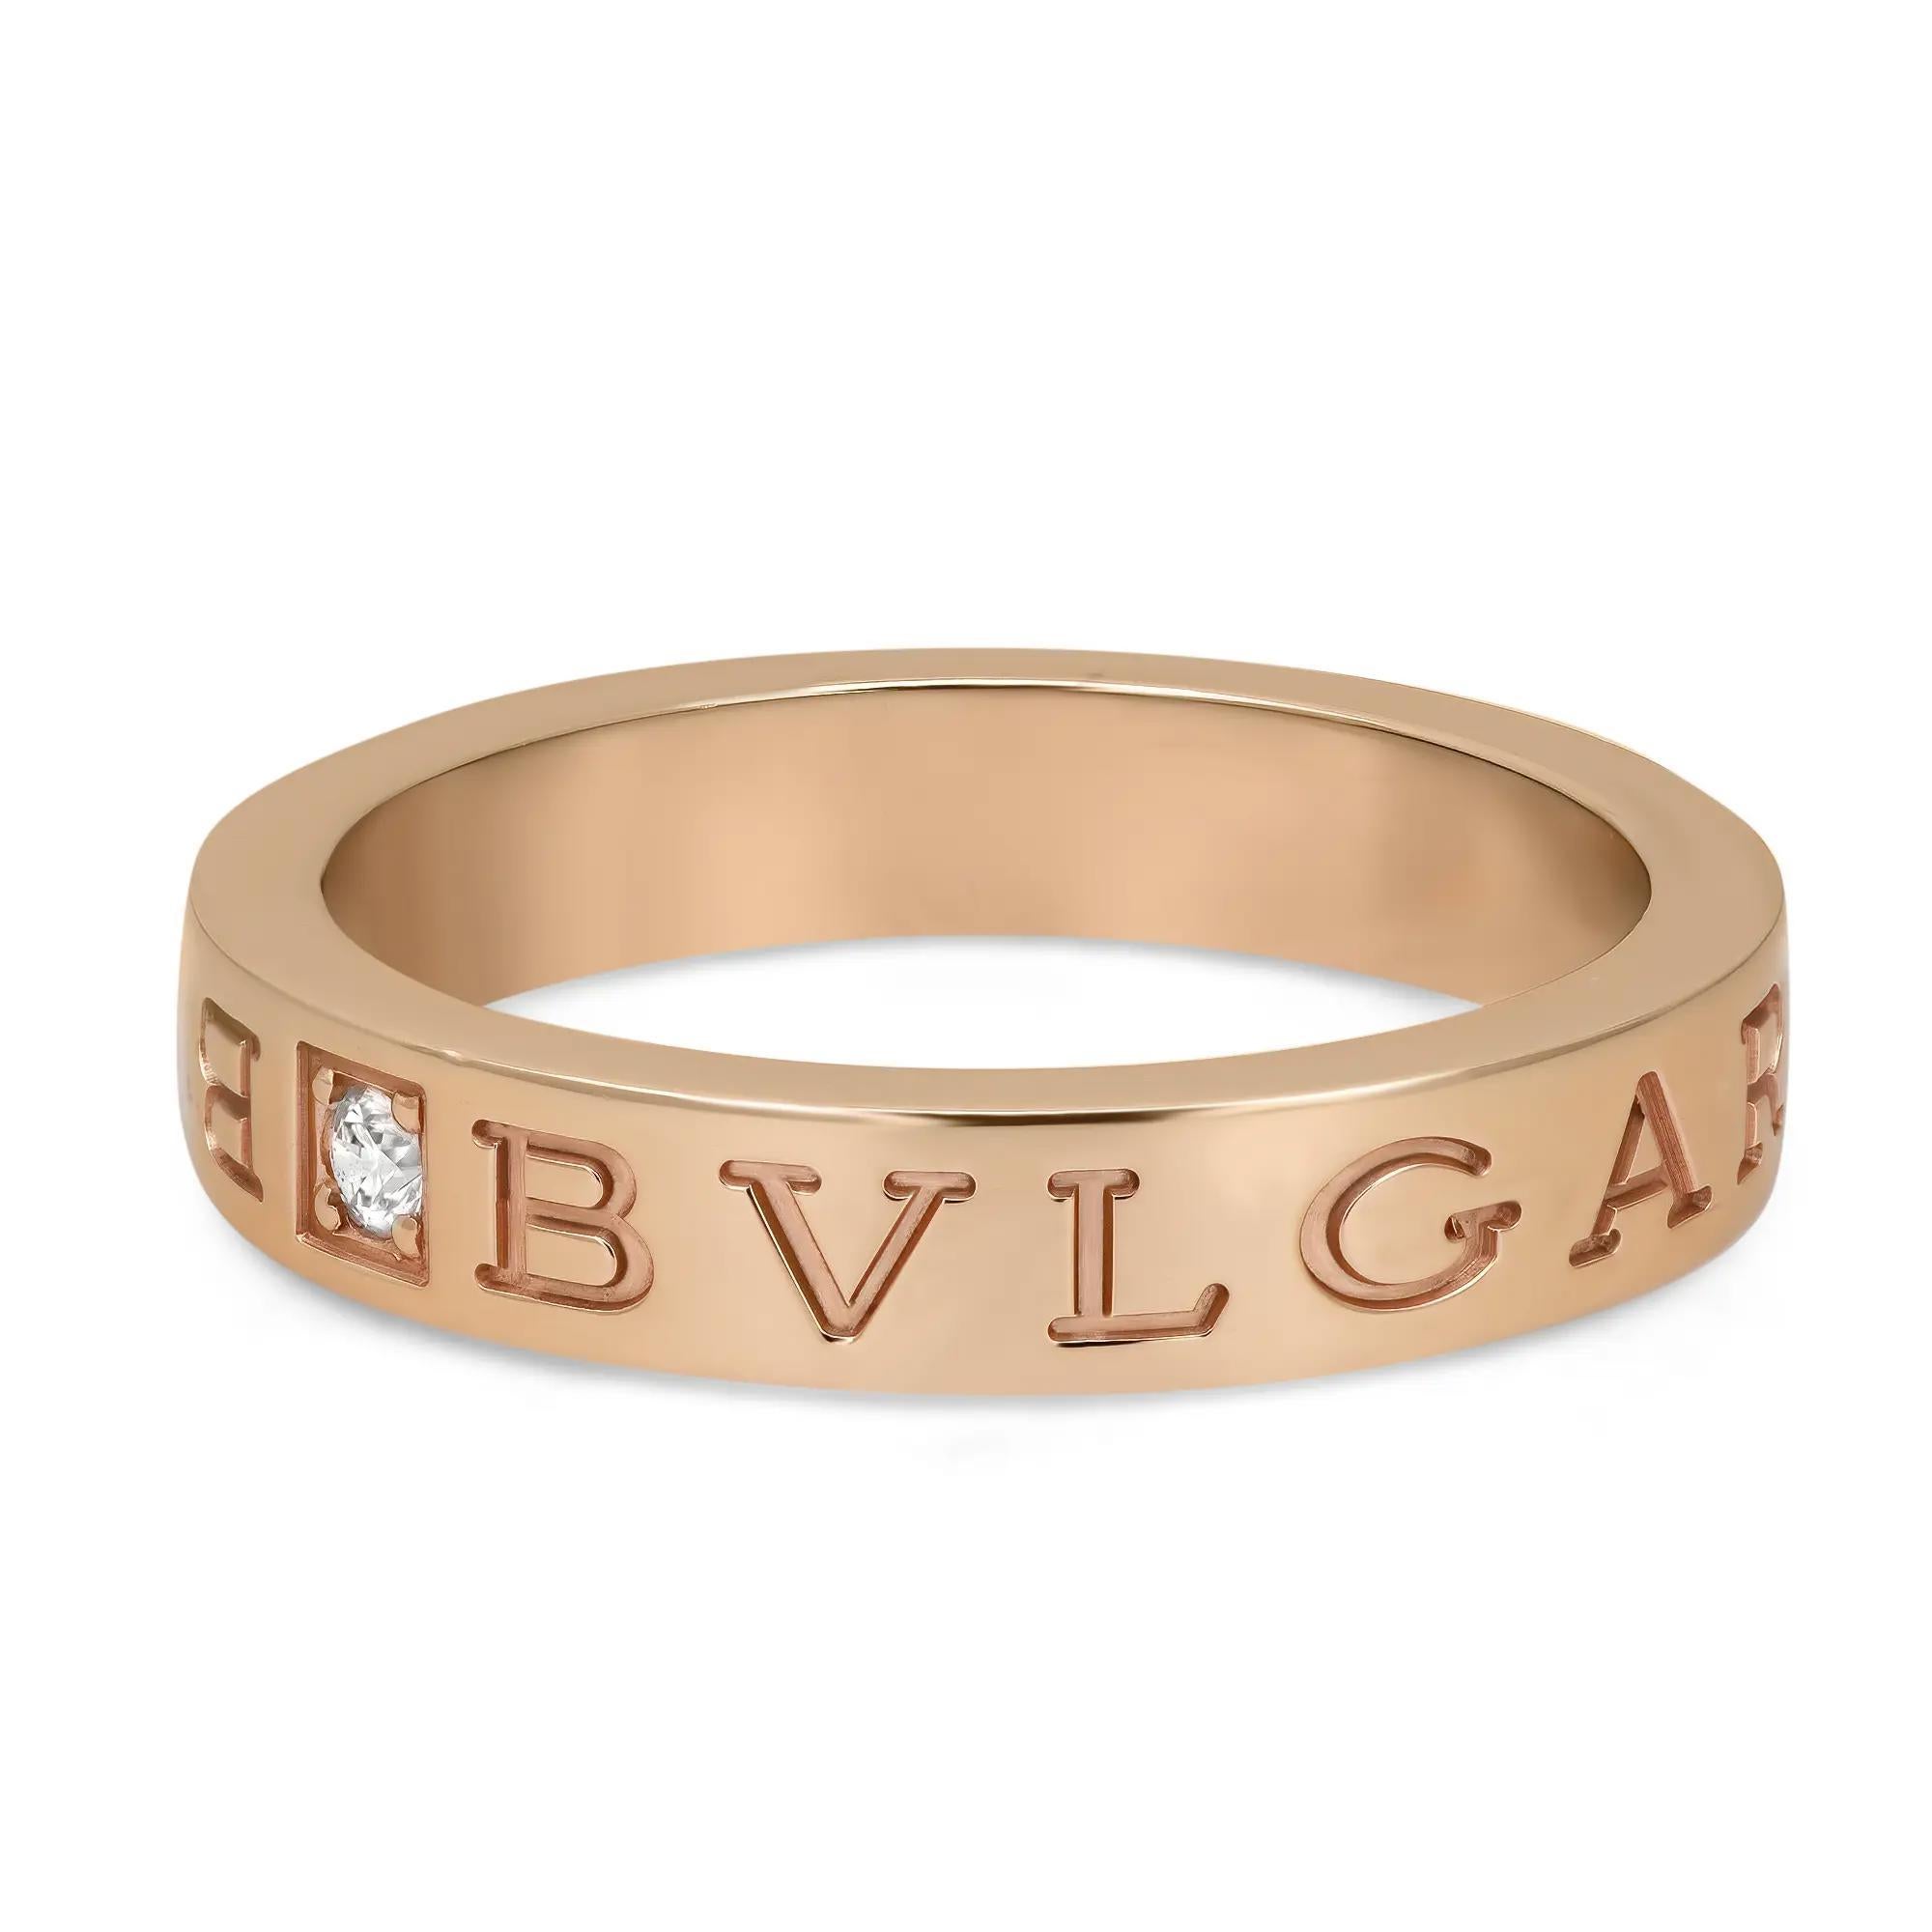 Bvlgari B.Zero1 Essential Diamond Band Ring présente un diamant rond central et le logo BVLGARI gravé sur les deux côtés. Réalisé en or rose 18 carats brillant. Taille de la bague : 58 US 8.5. Largeur : 3,9 mm. Poids du diamant : 0,04 carat. Poids